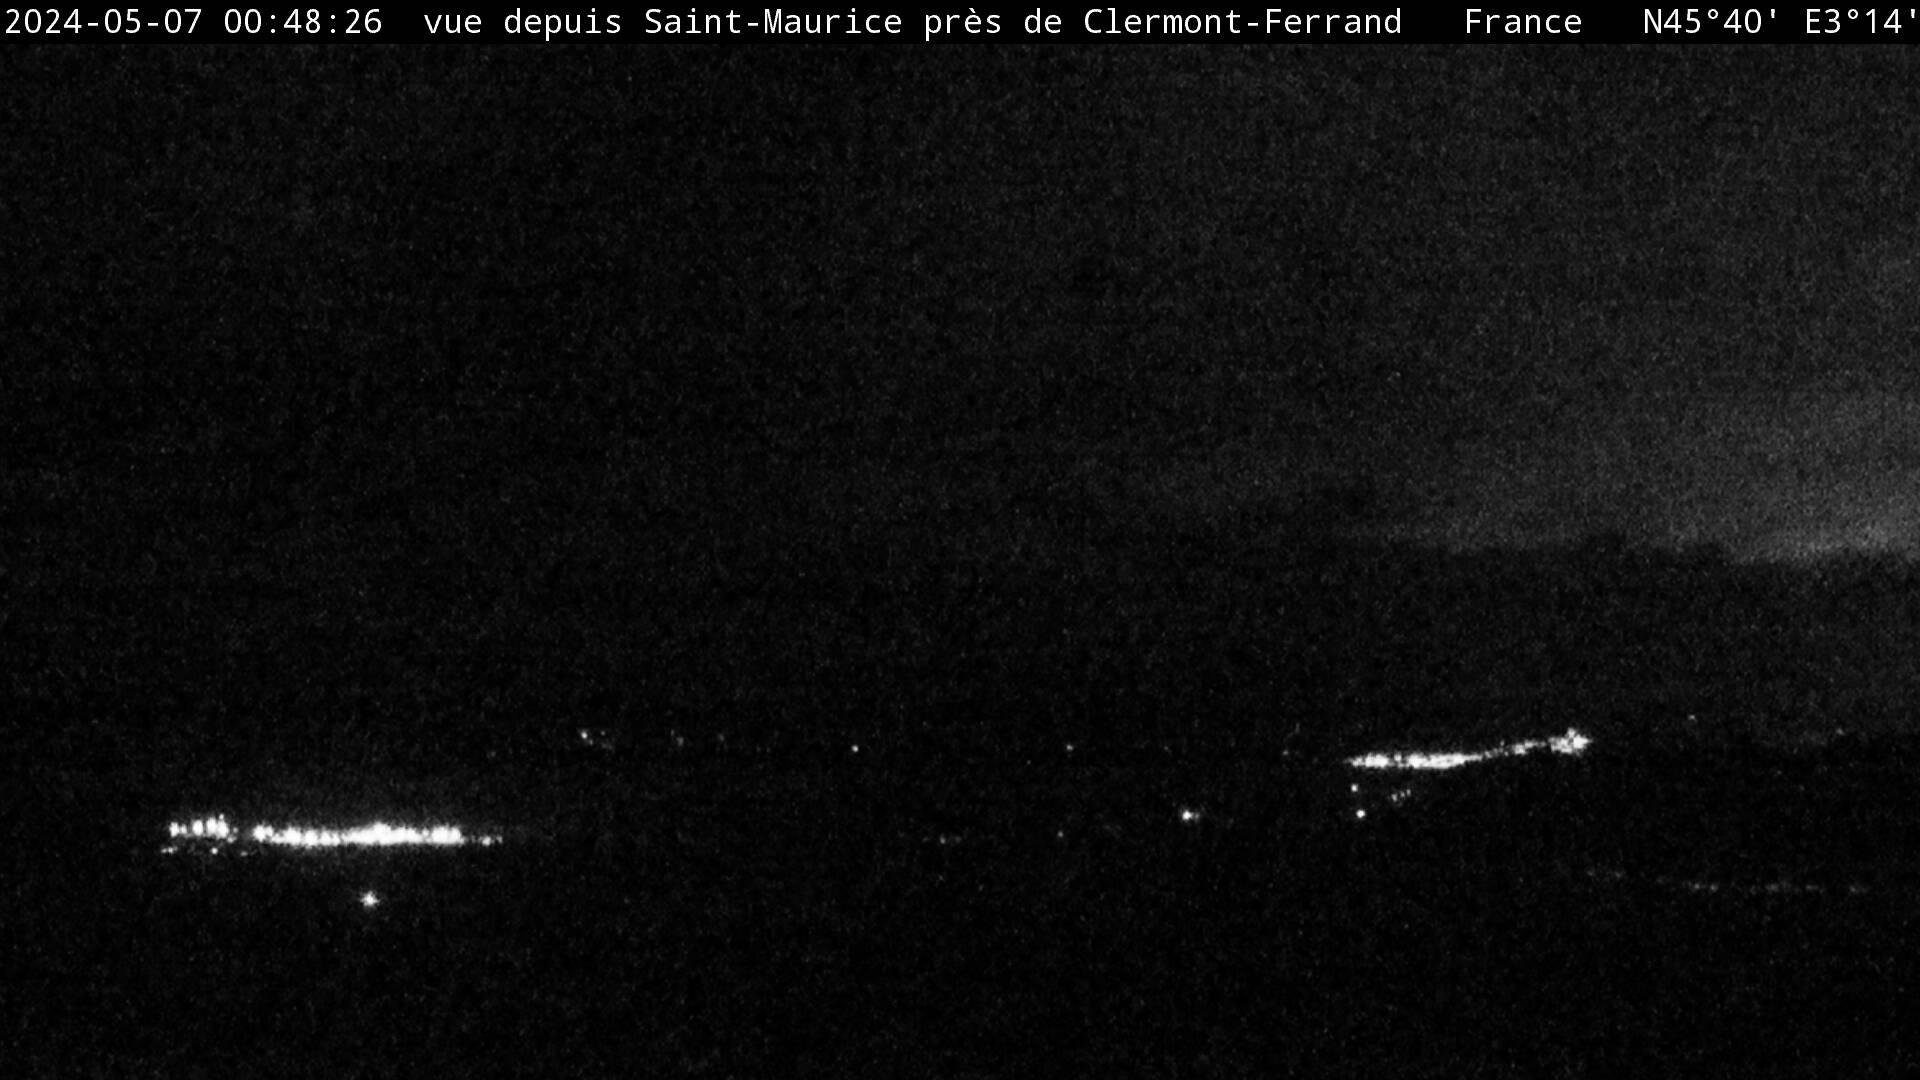 Saint-Maurice: Saint Maurice près de Clermont Ferrand